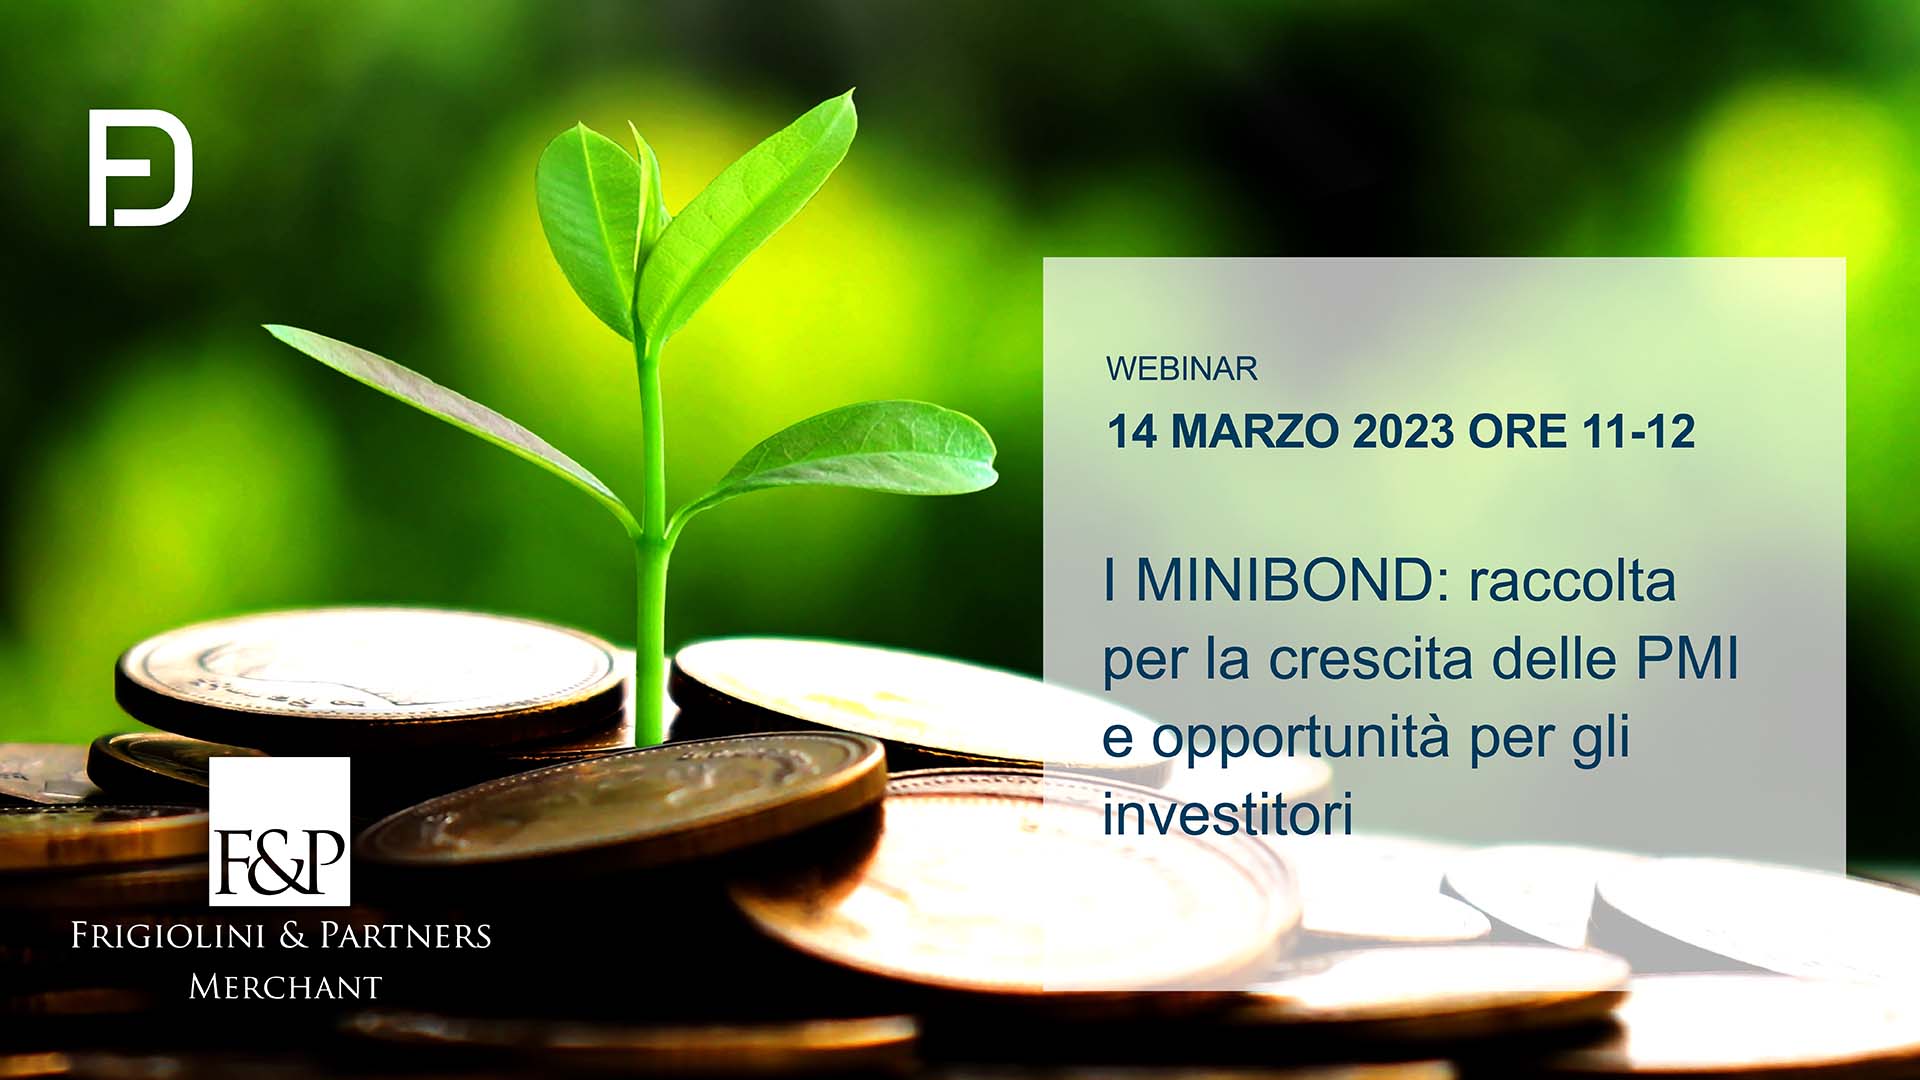 I MINIBOND: raccolta per la crescita delle PMI e opportunità per gli investitori